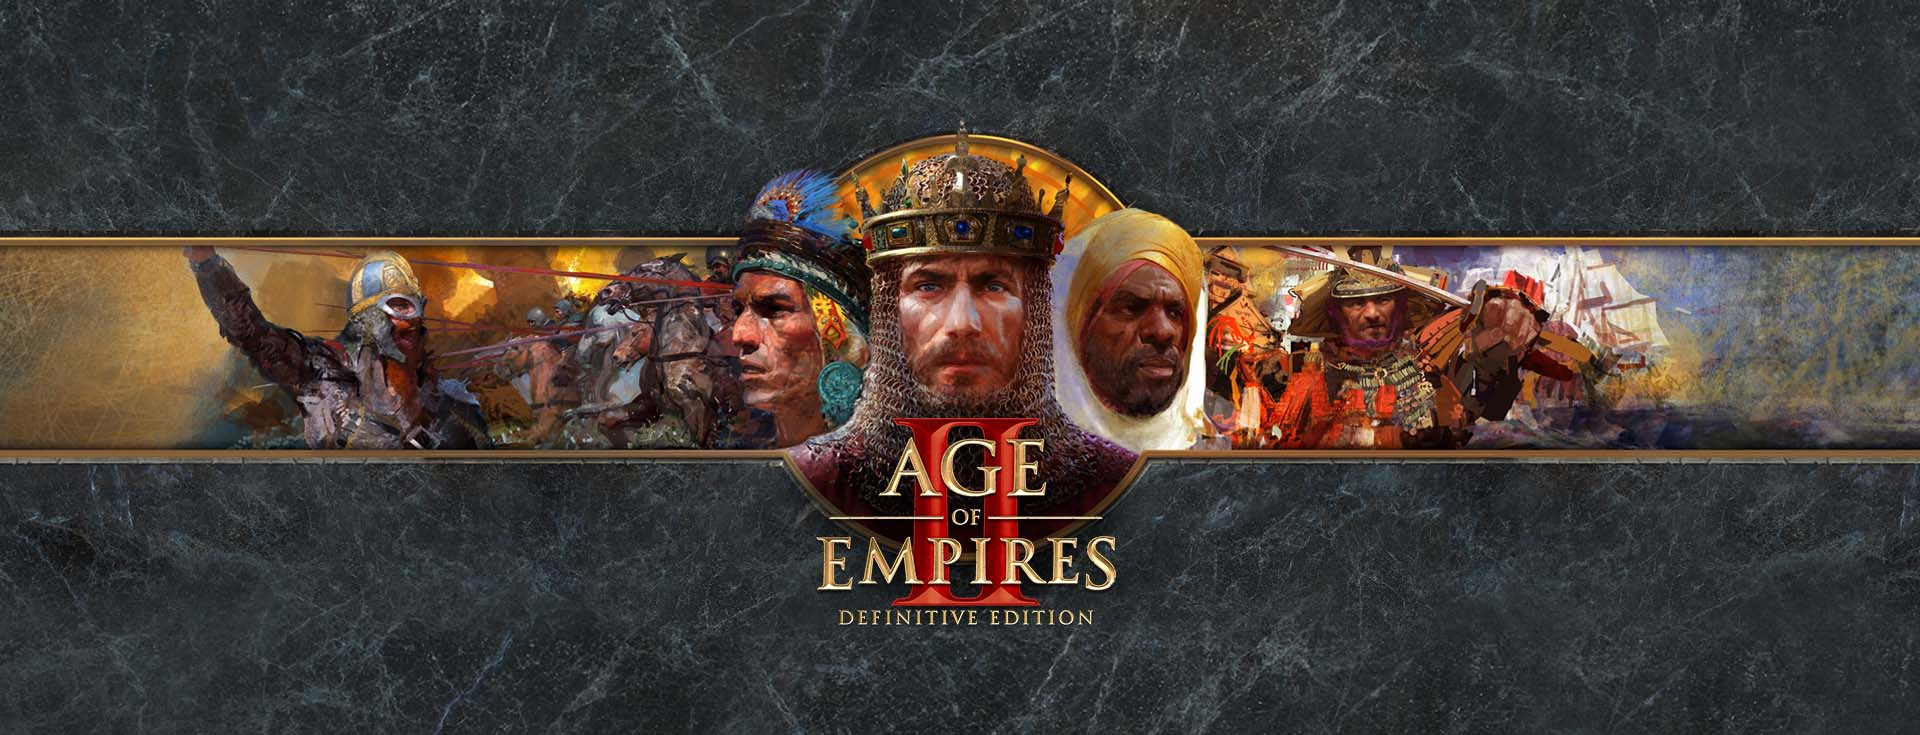 comment jouer à age of empires ii edition définitive sur mac